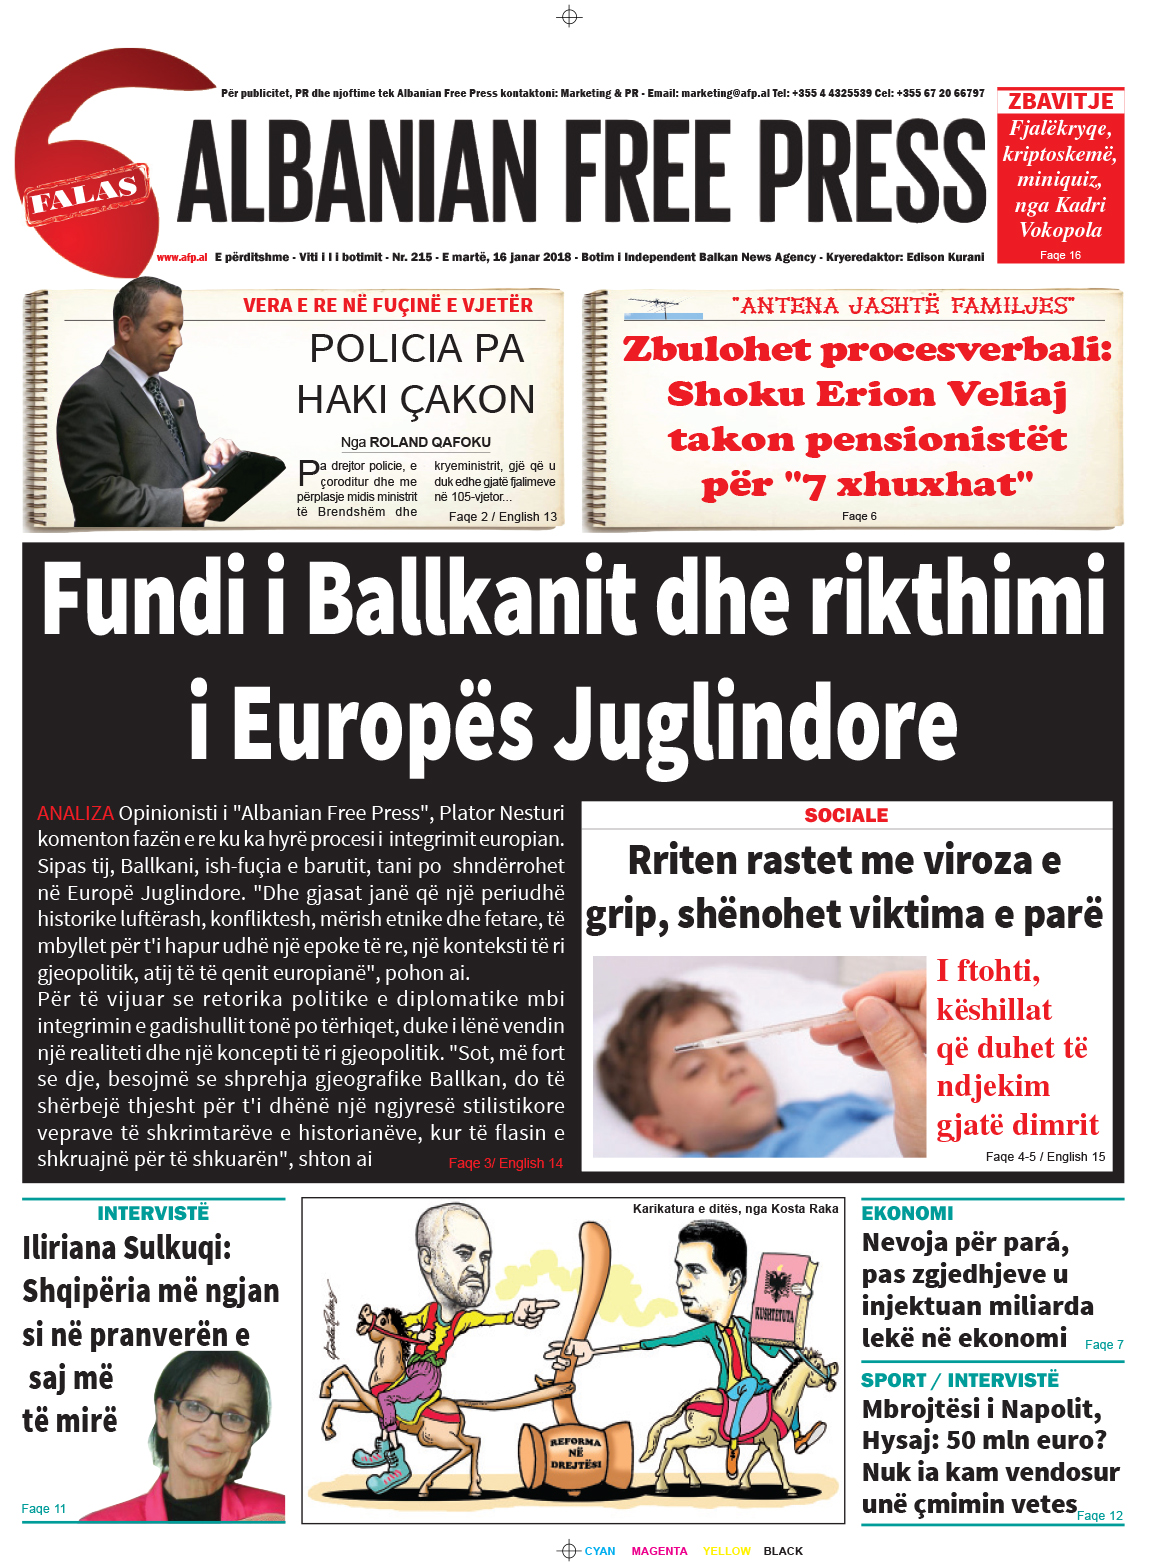 Lexoni sot, 16 janar 2018, në gazetën e përditshme "Albanian Free Press"